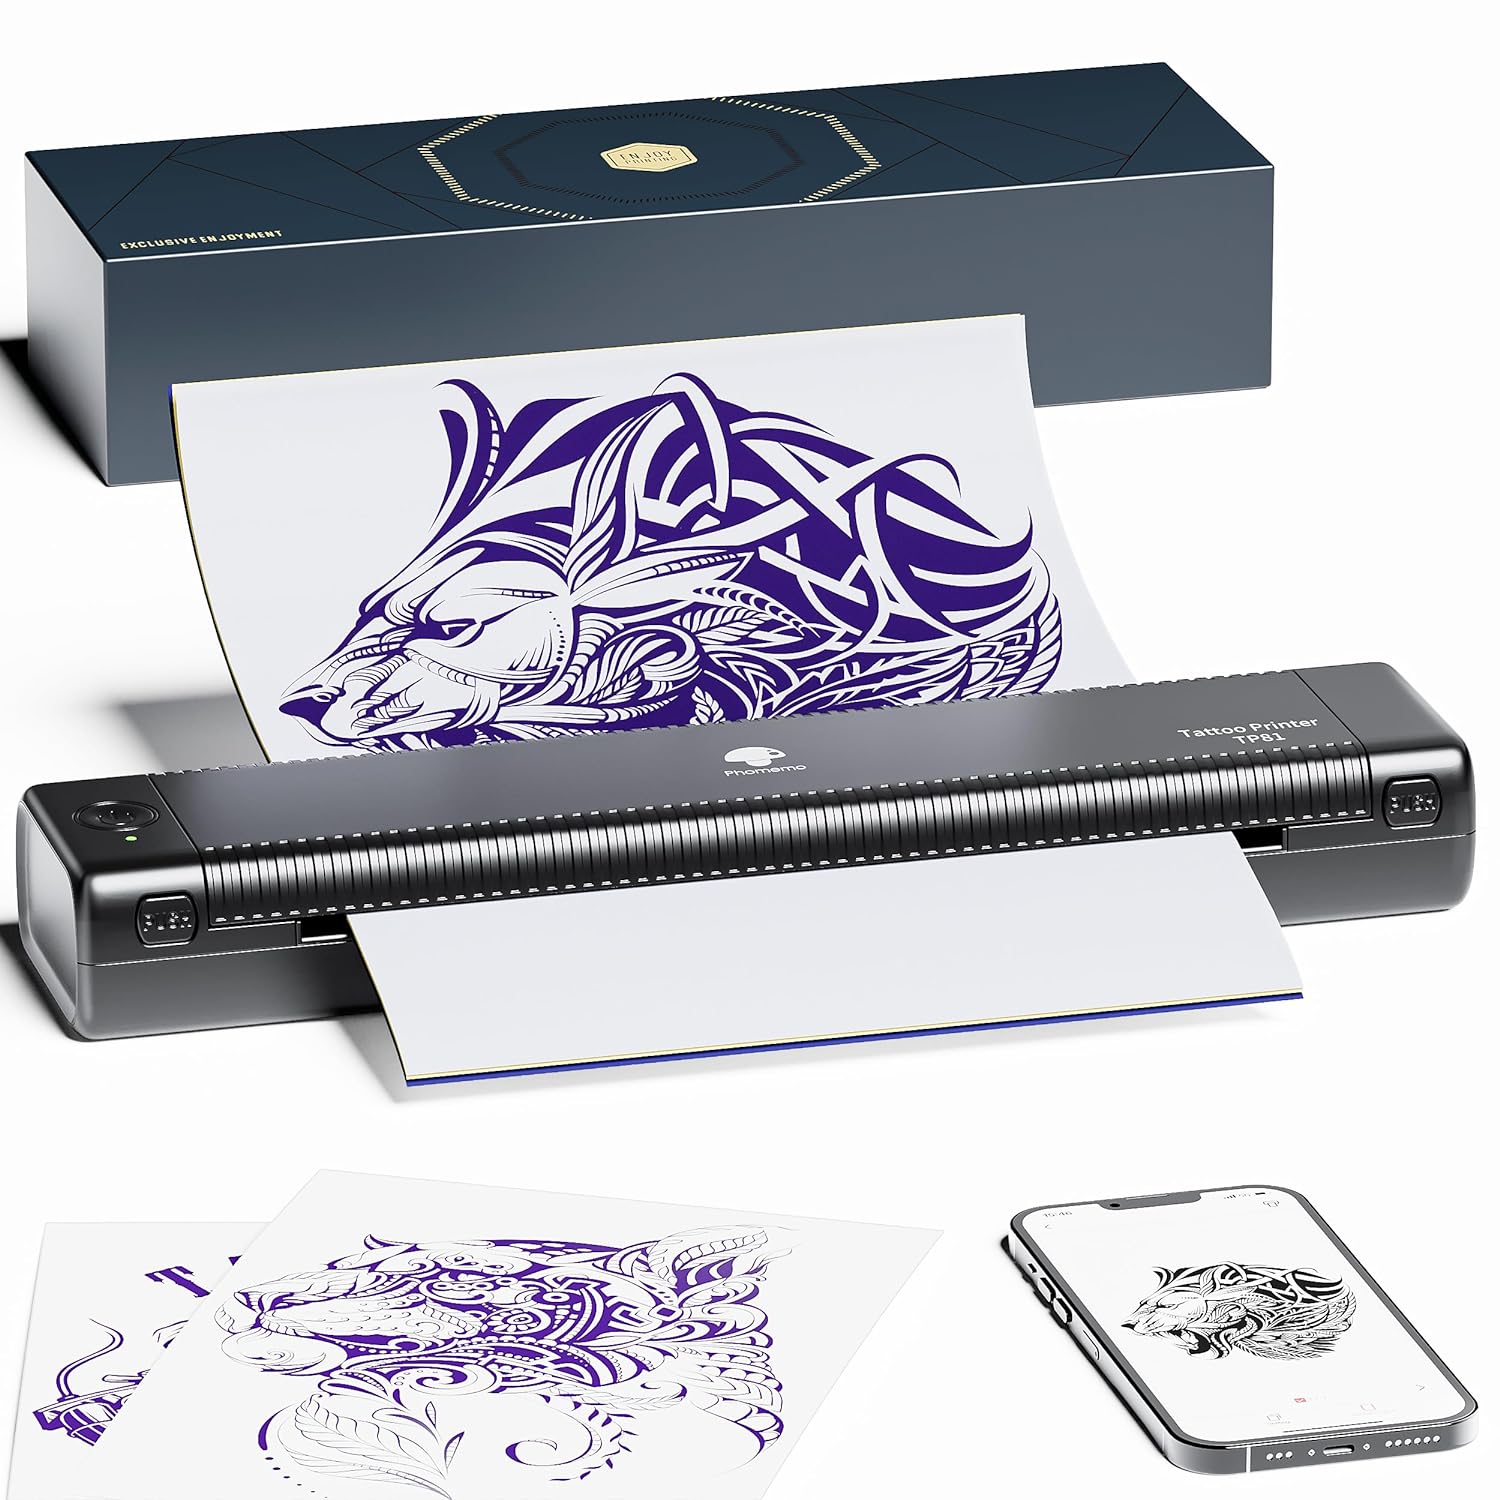 Impressora de modelo de tatuagem sem fio Phomemo TP81 (atualização)